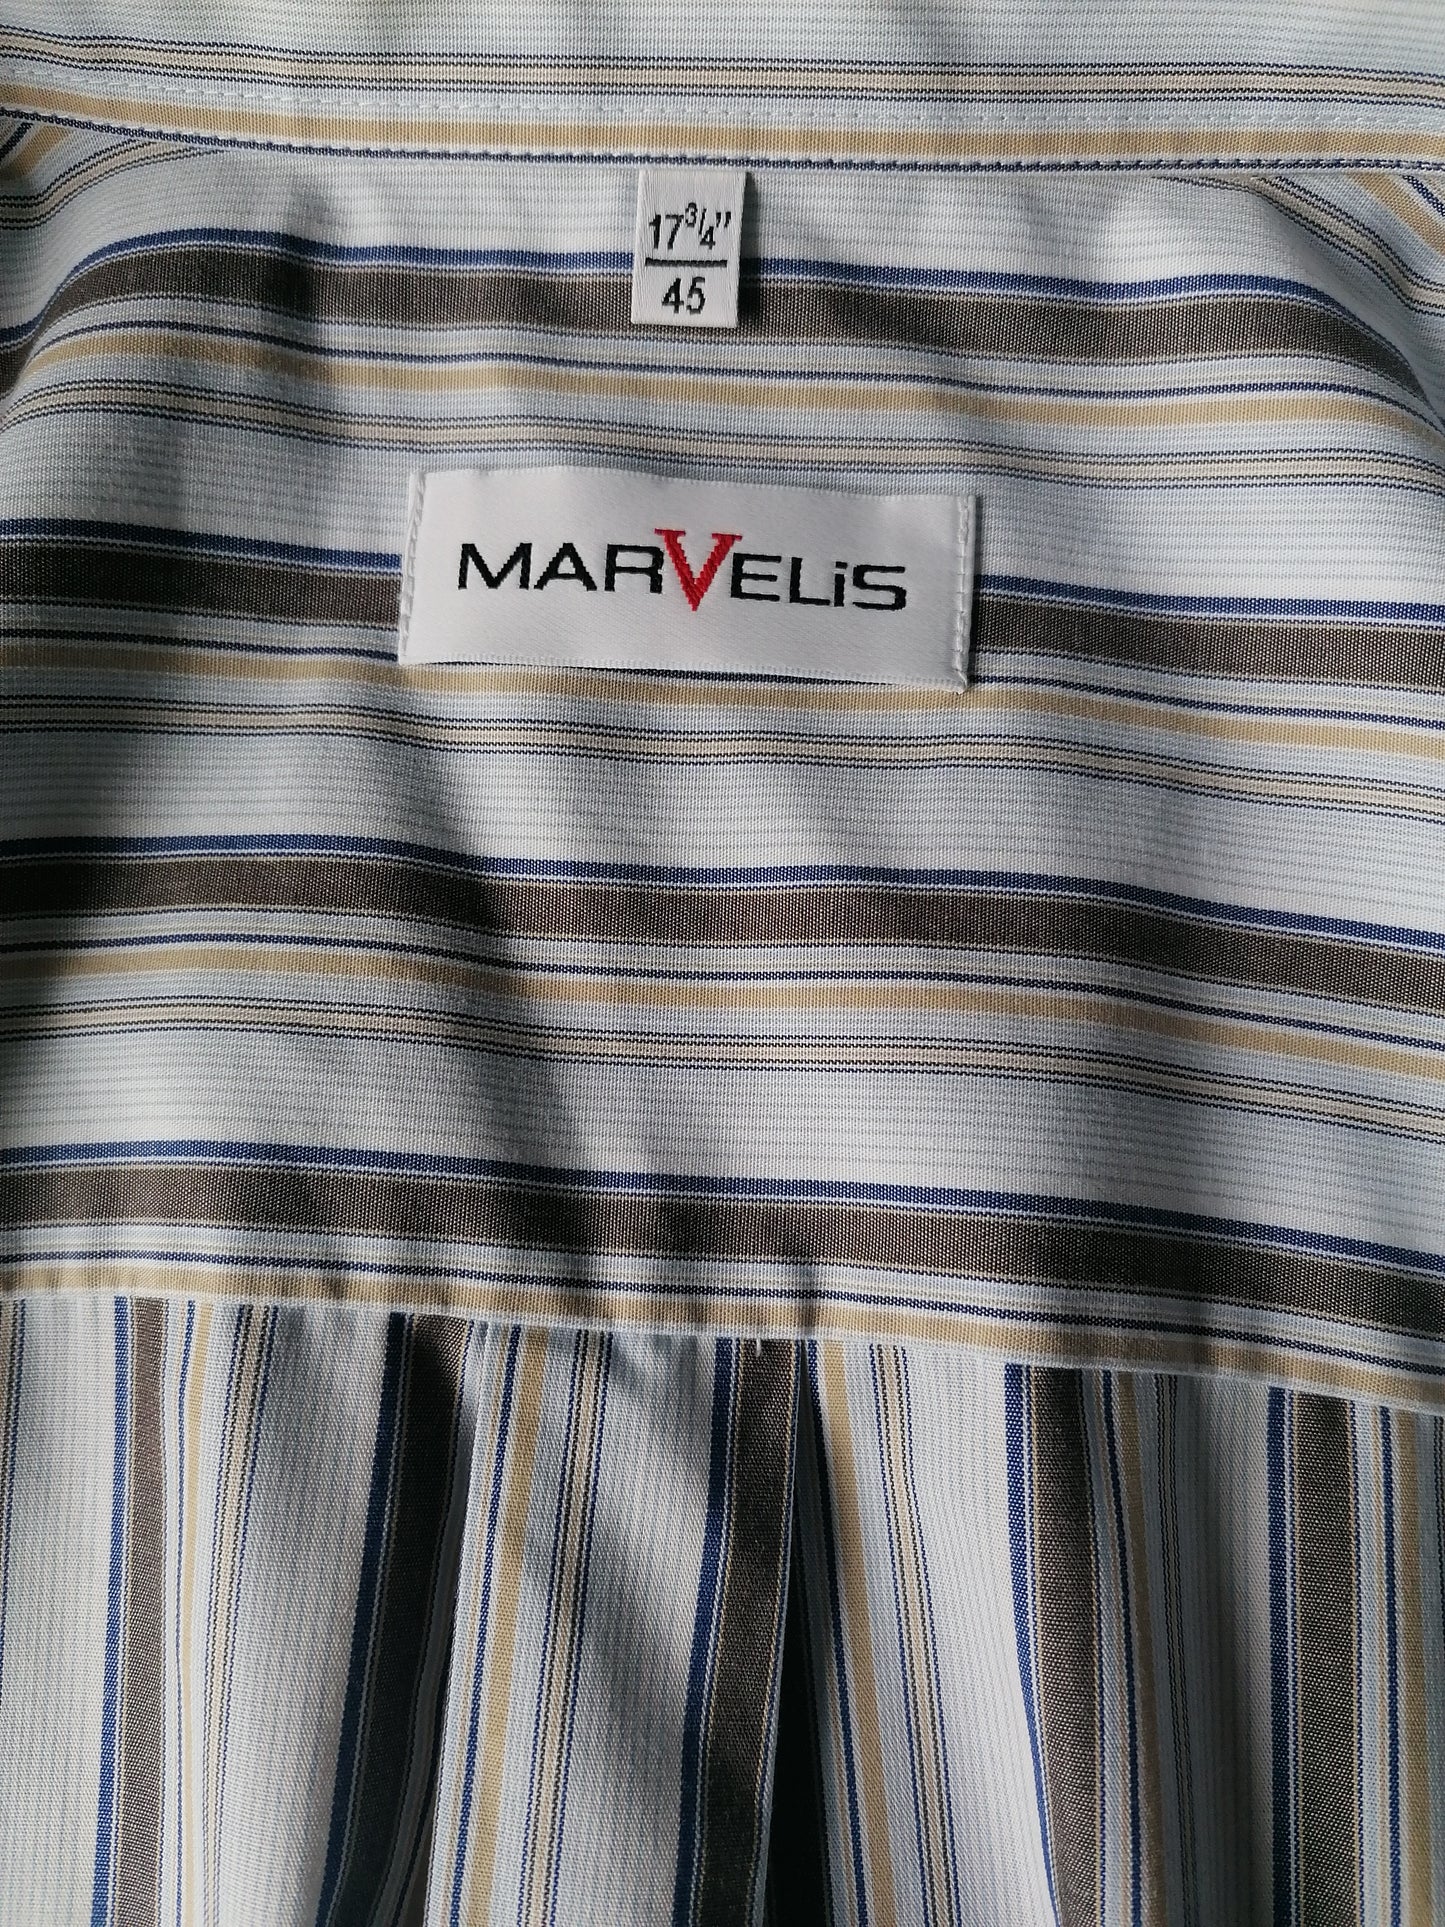 Camicia Marvelis. Strisce bianche giallo blu marrone. Dimensione 45 / 2xl >> 3xl. cade più spaziose